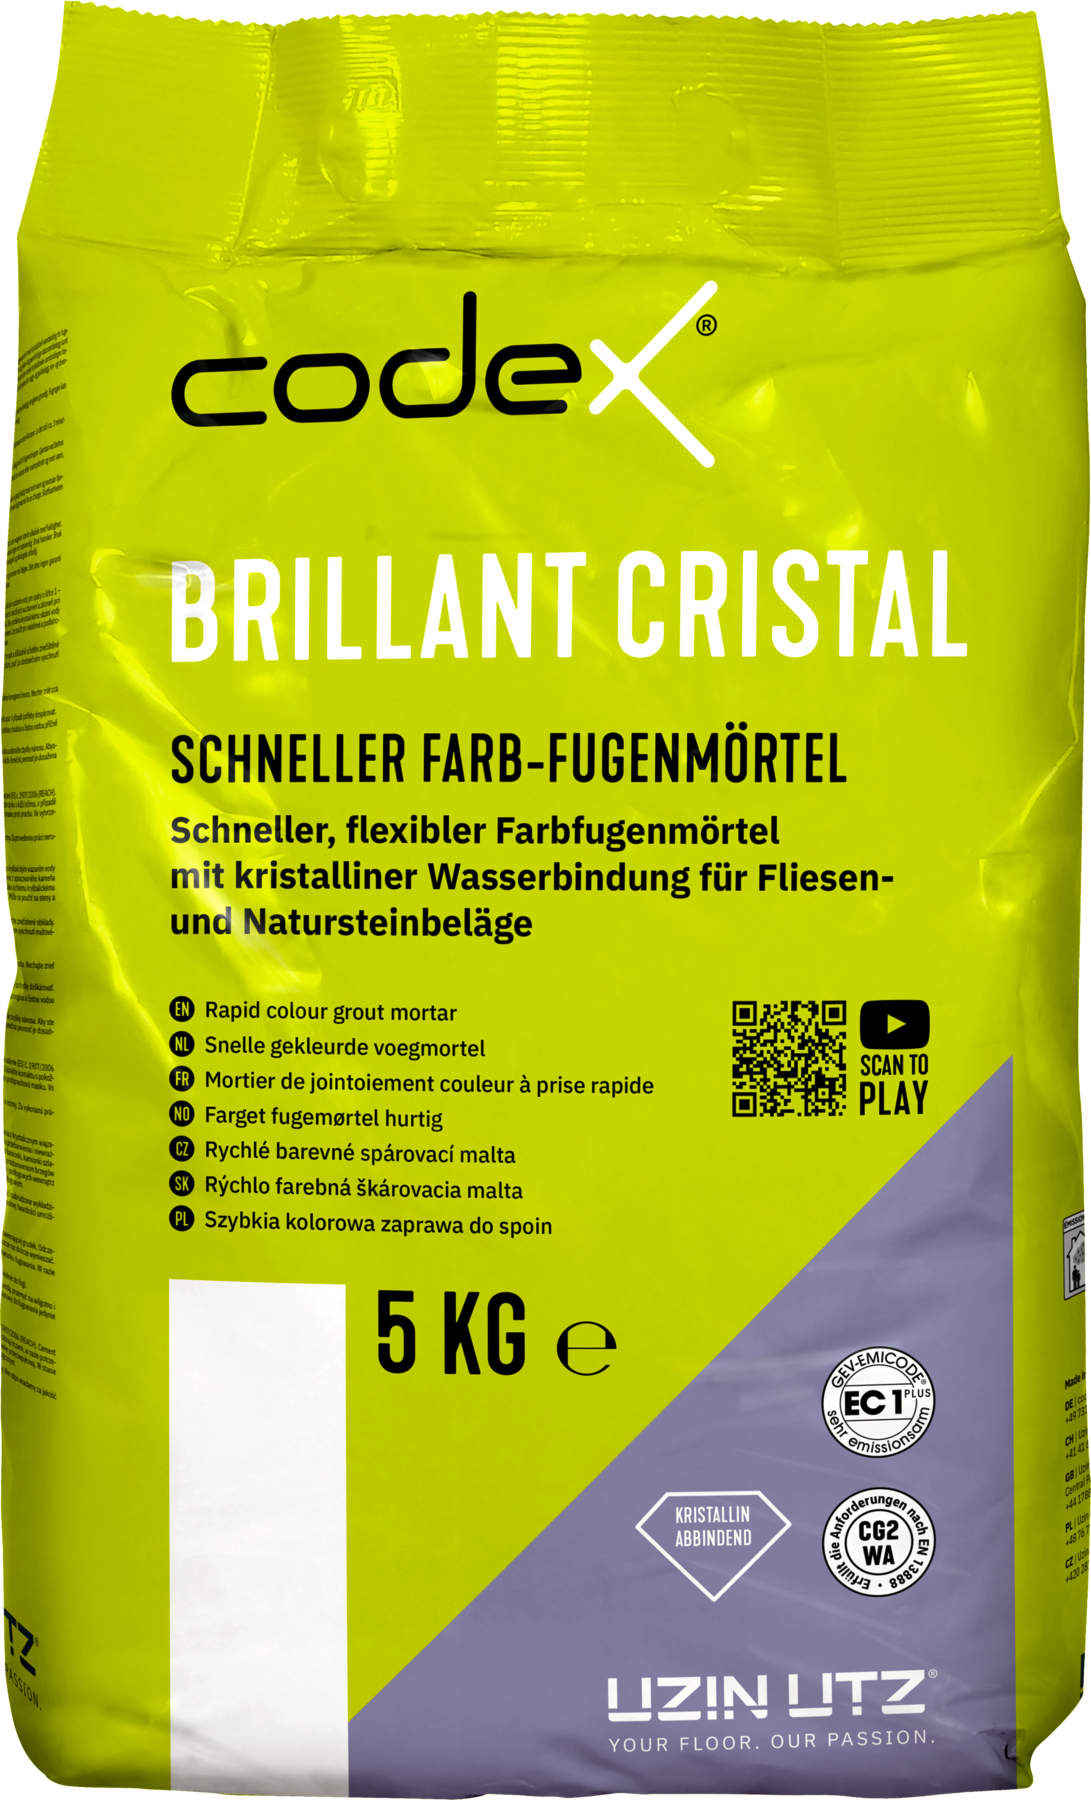 Codex Brillant Cristal Cremeweiß 5 kg Schneller Farbfugenmörtel